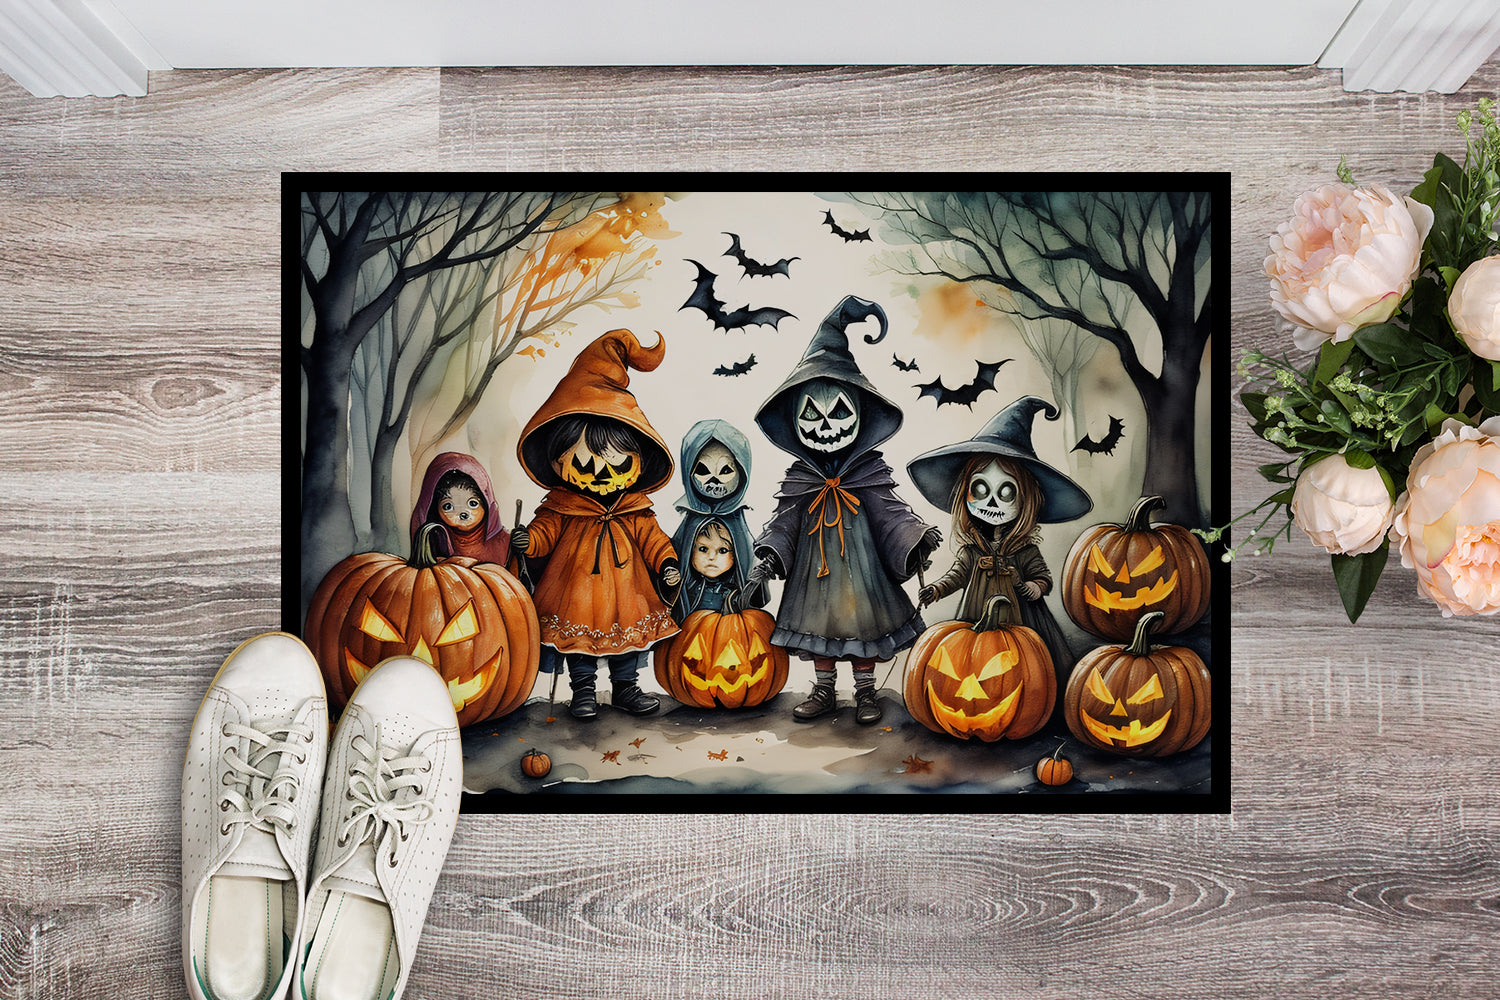 Buy this Trick or Treaters Spooky Halloween Doormat 18x27